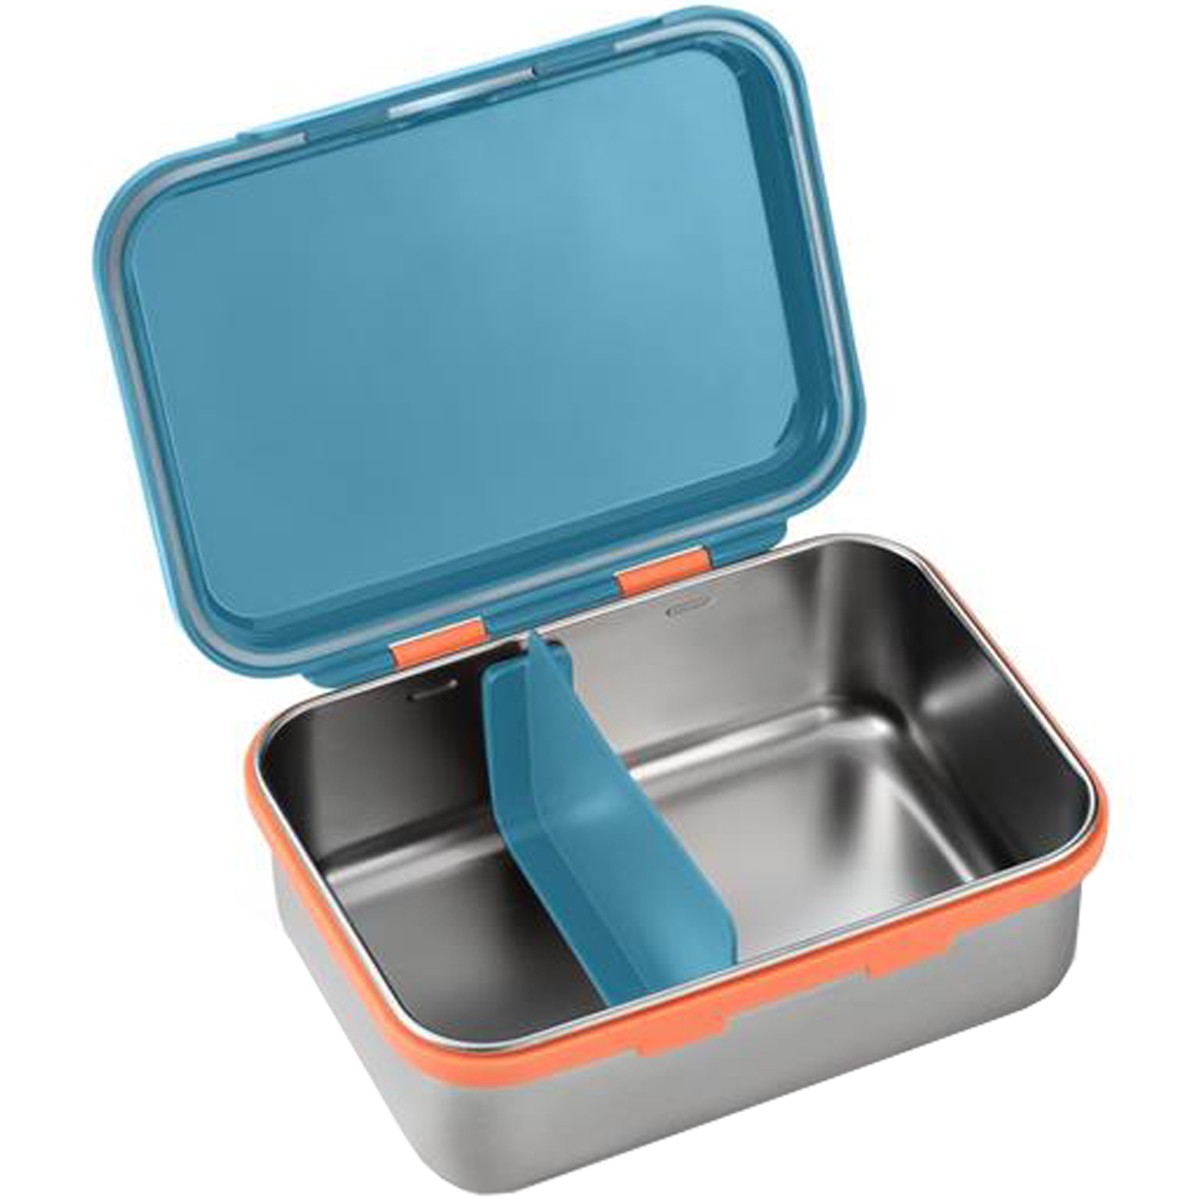 Porta Lanches Infantil Bento Box Azul em Aço Inox Hot e Cold Para 6+ Meses - Fisher Price